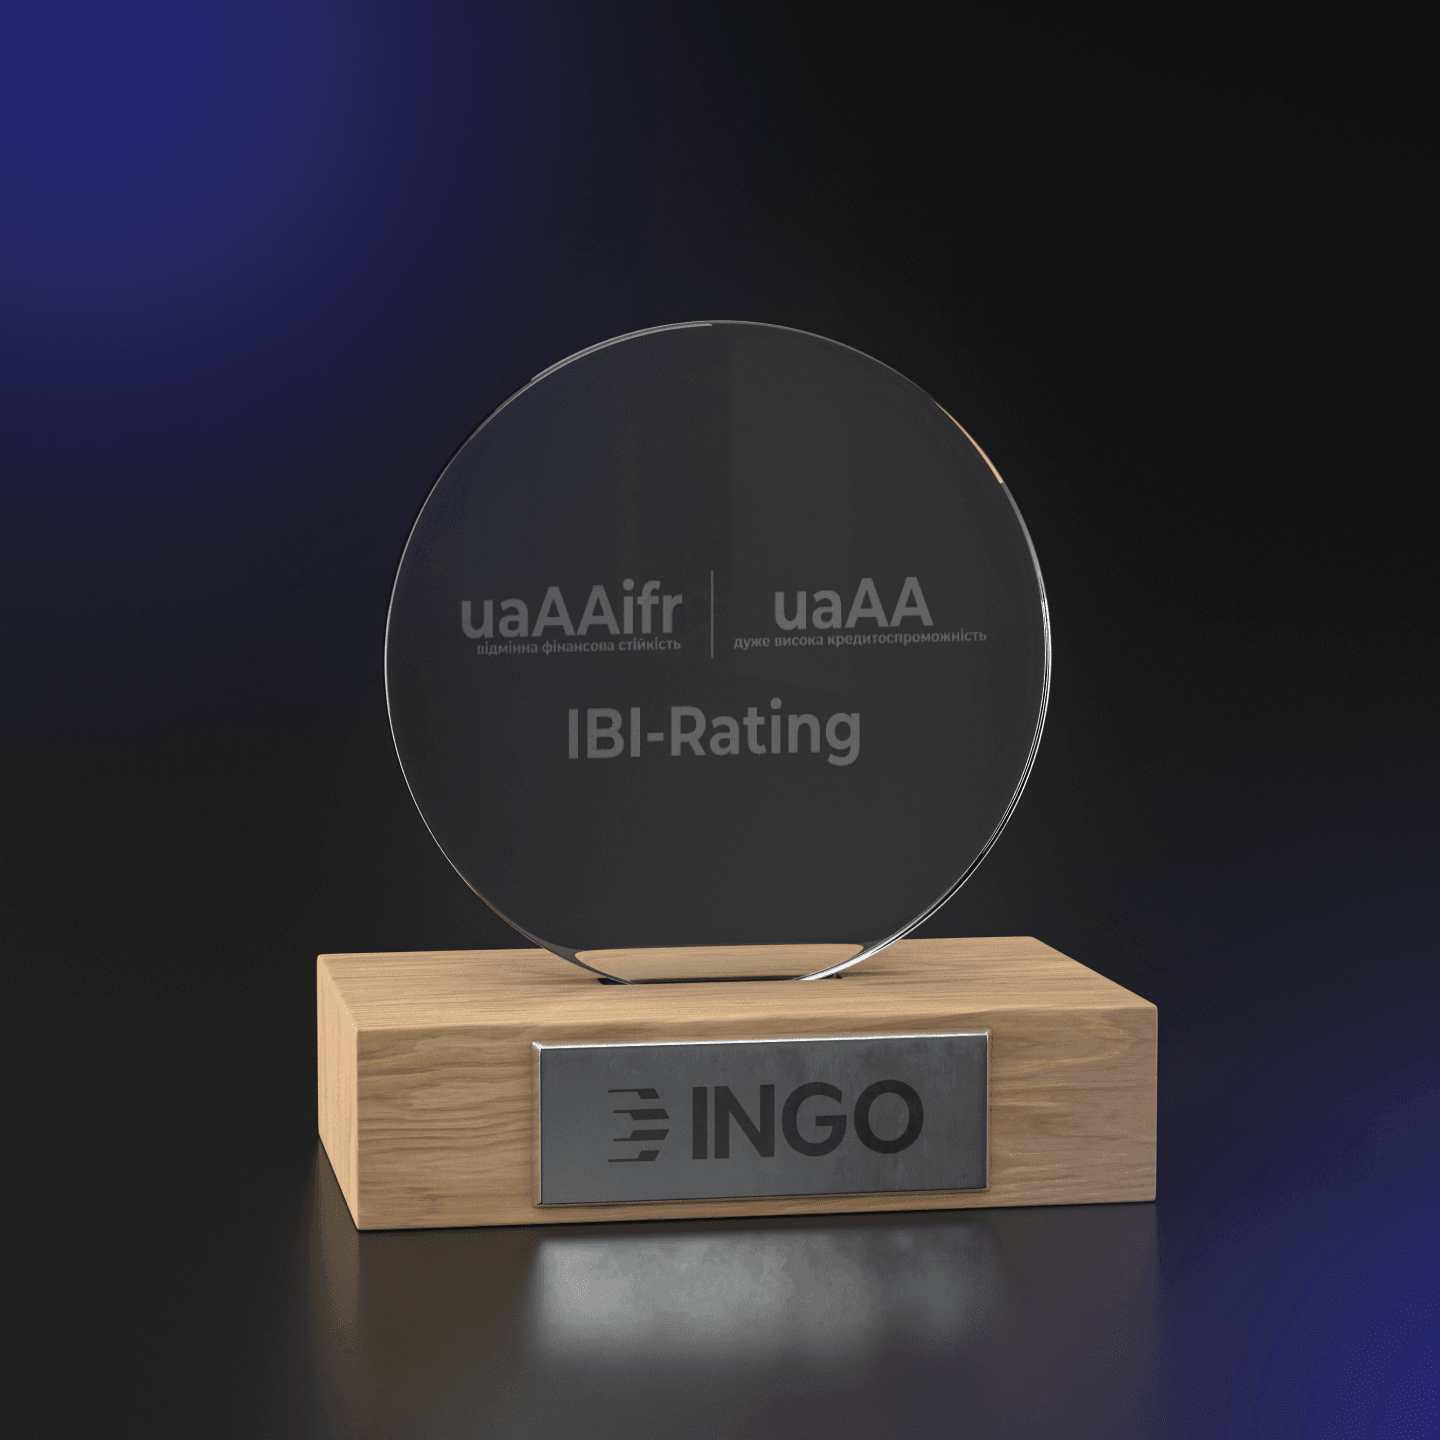 Кредитный рейтинг и рейтинг финансовой стабильности ИНГО остаются на высоком уровне